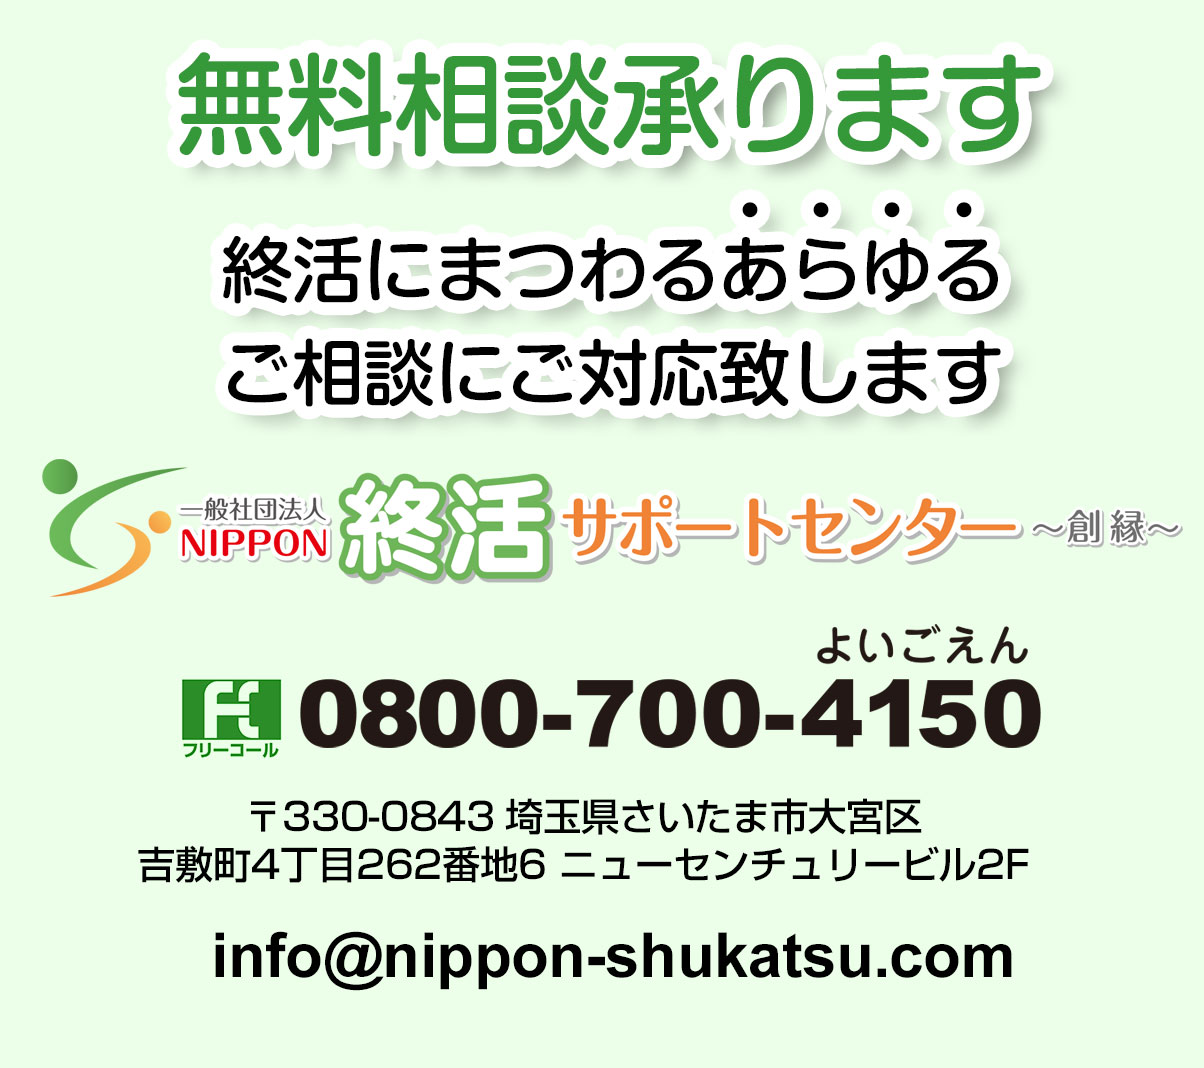 一般社団法人 NIPPON終活サポートセンター